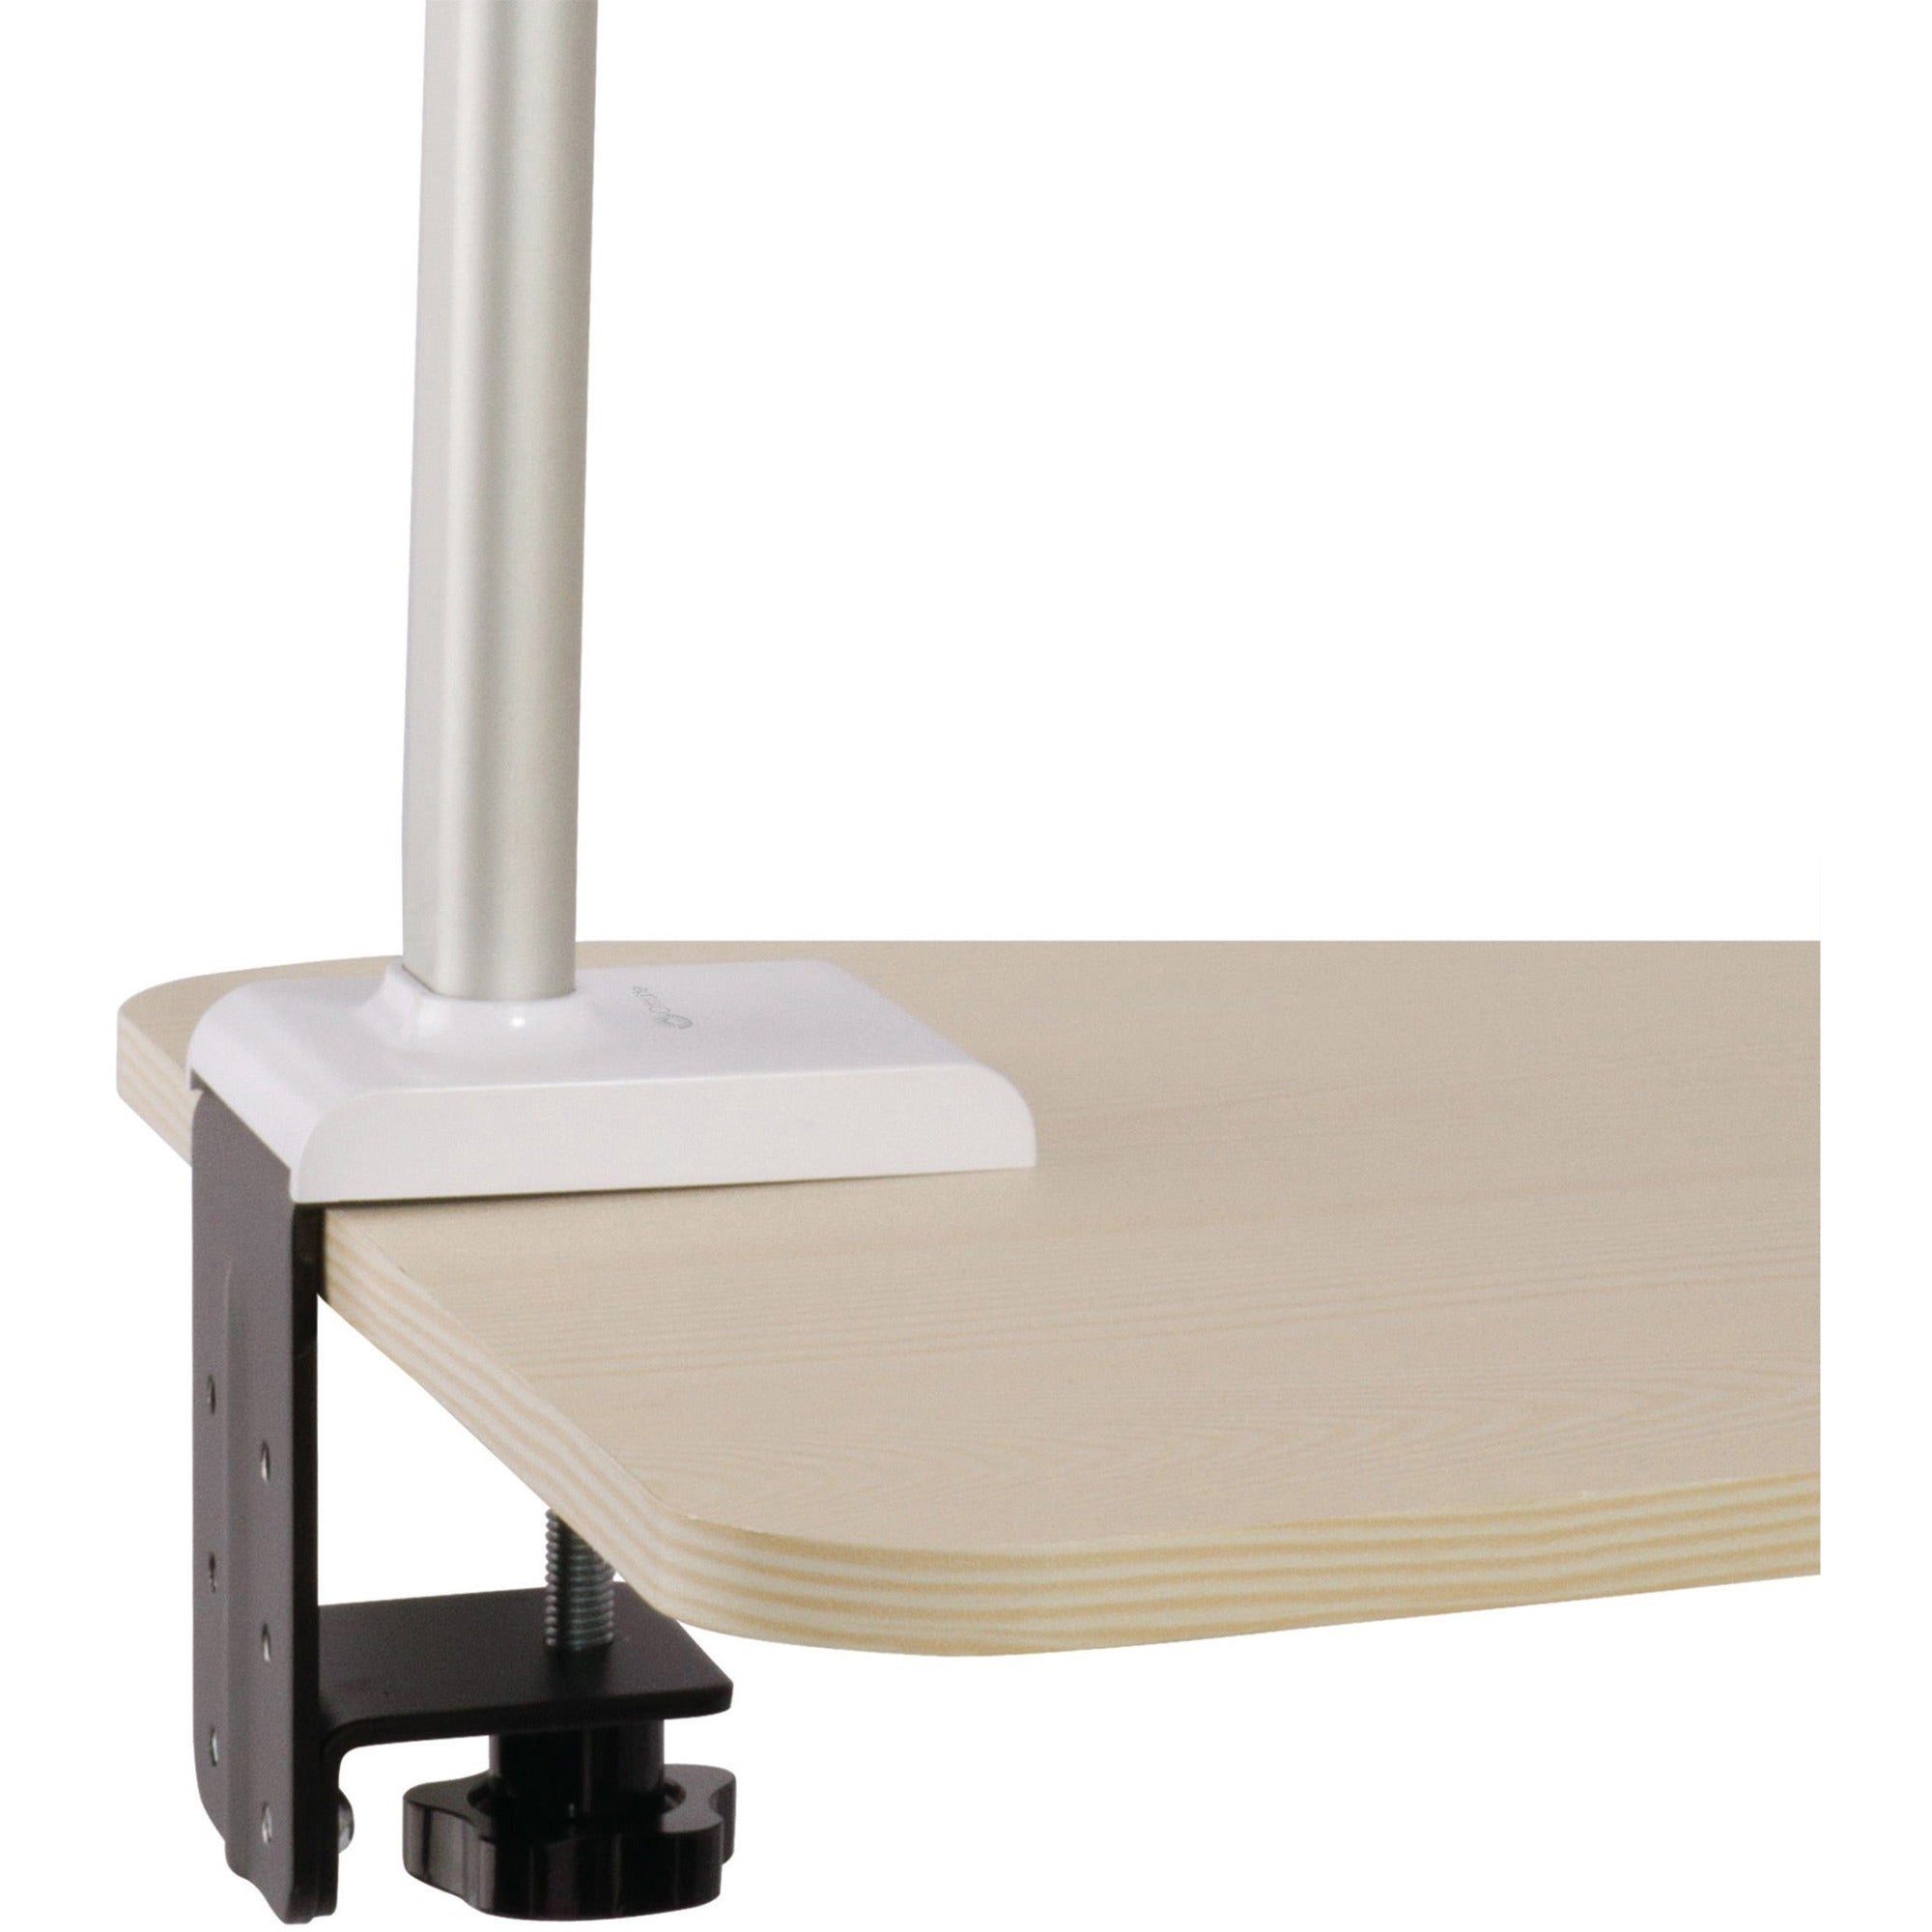 ottlite-perform-led-desk-lamp-24-3-4h-white-248-height-41-width-1led-bulb-white-adjustable-brightness-flexible-neck-adjustable-height-adjustable-arm-glare-free-light-dimmable-energy-saving-abs-desk-mountable-table-top-arm_ottcs49602w - 2